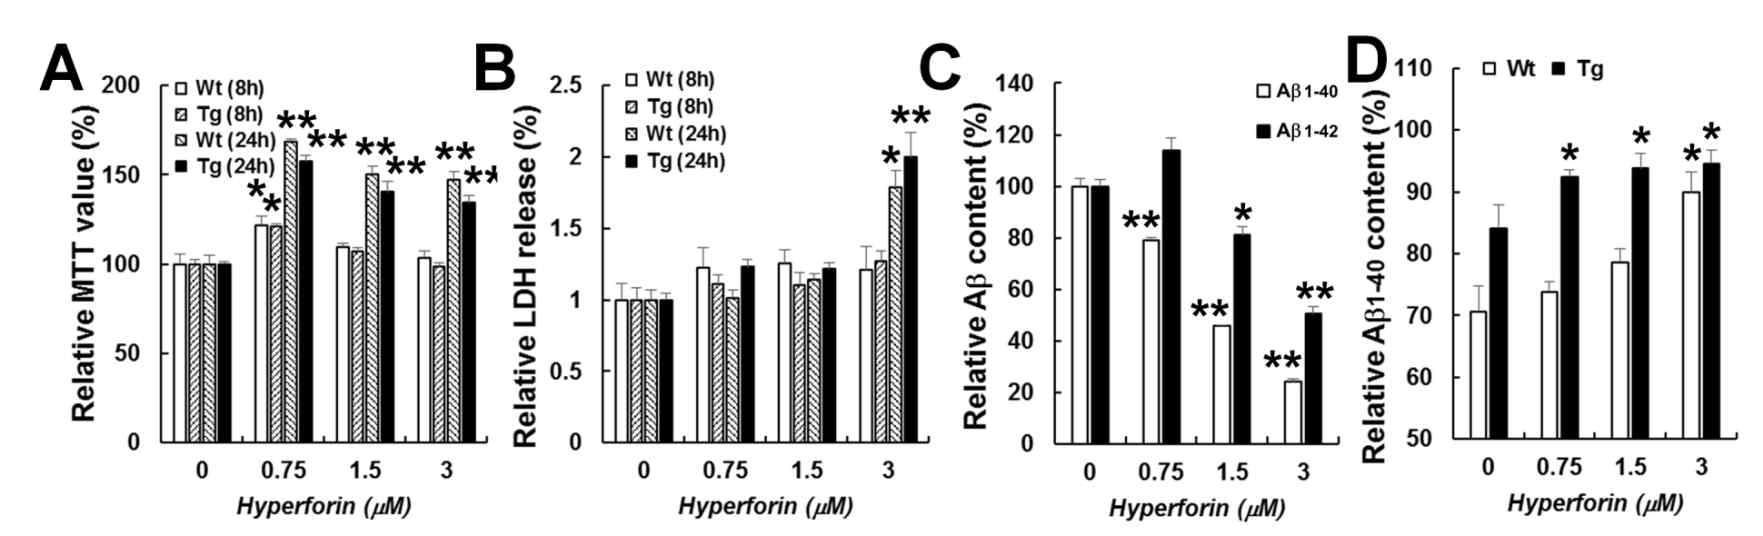 APPsw/PSdE9 transgenic mouse 유래의 embryonic cerebral cortex 유래의 primary astrocyte에서의 hyperforin에 의한 베타 아밀로이드의 감소. (A-B) MTT assay(A) 및 LDH release assay(B). wild type 및 transgenic mouse의 astrocyte에 8/24시간 동안 hyperforin을 처리한 후의 결과 (C) hyperforin을 24시간 처리한 후, media에서의 sandwich ELISA를 통한 human beta-amyloid 1-40/42의 상대량 비교. A~C의 실험은 hyperforin의 기술된 농도로 8시간 동안 처리 후 수행하였음. (D) wild type 및 transgenic mouse의 astrocyte에 1ng의 베타 아밀로이드를 처리한 후, 4시간 후의 잔여 베타아밀로이드 양을 측정한 결과